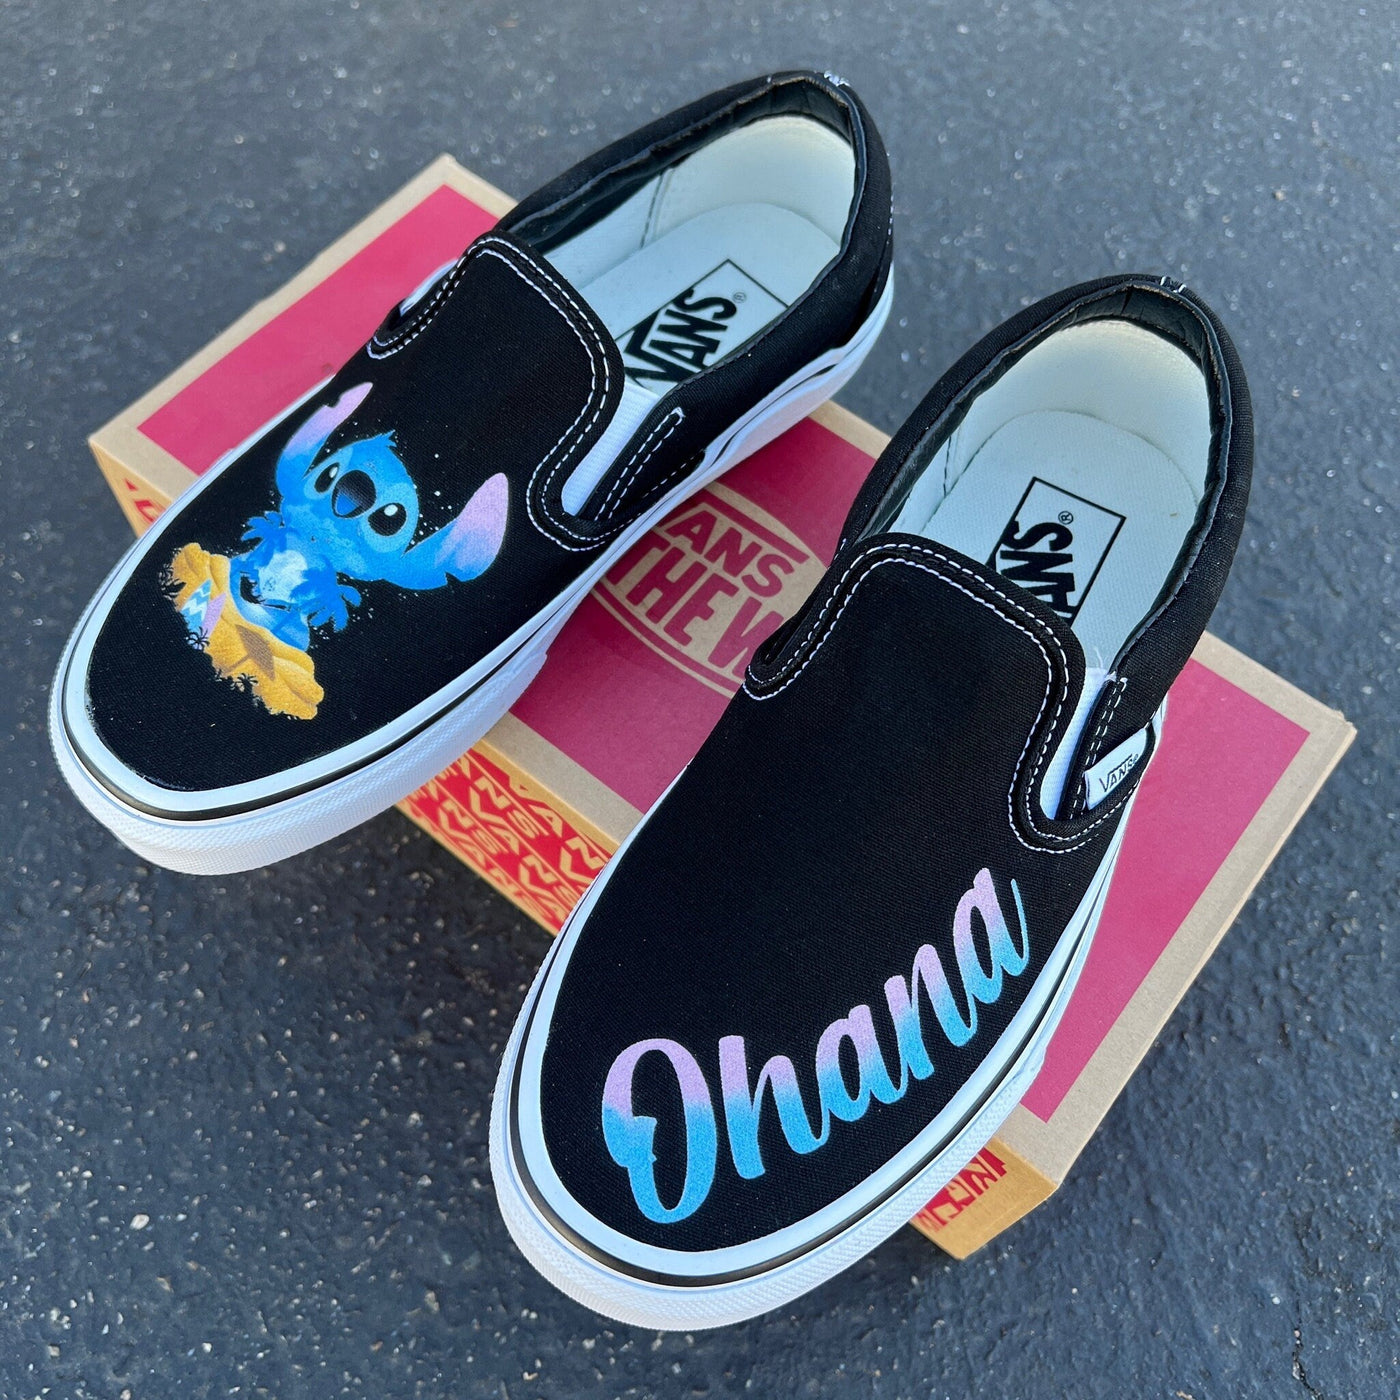 Ohana Means Family Custom Vans Slip On Sneakers